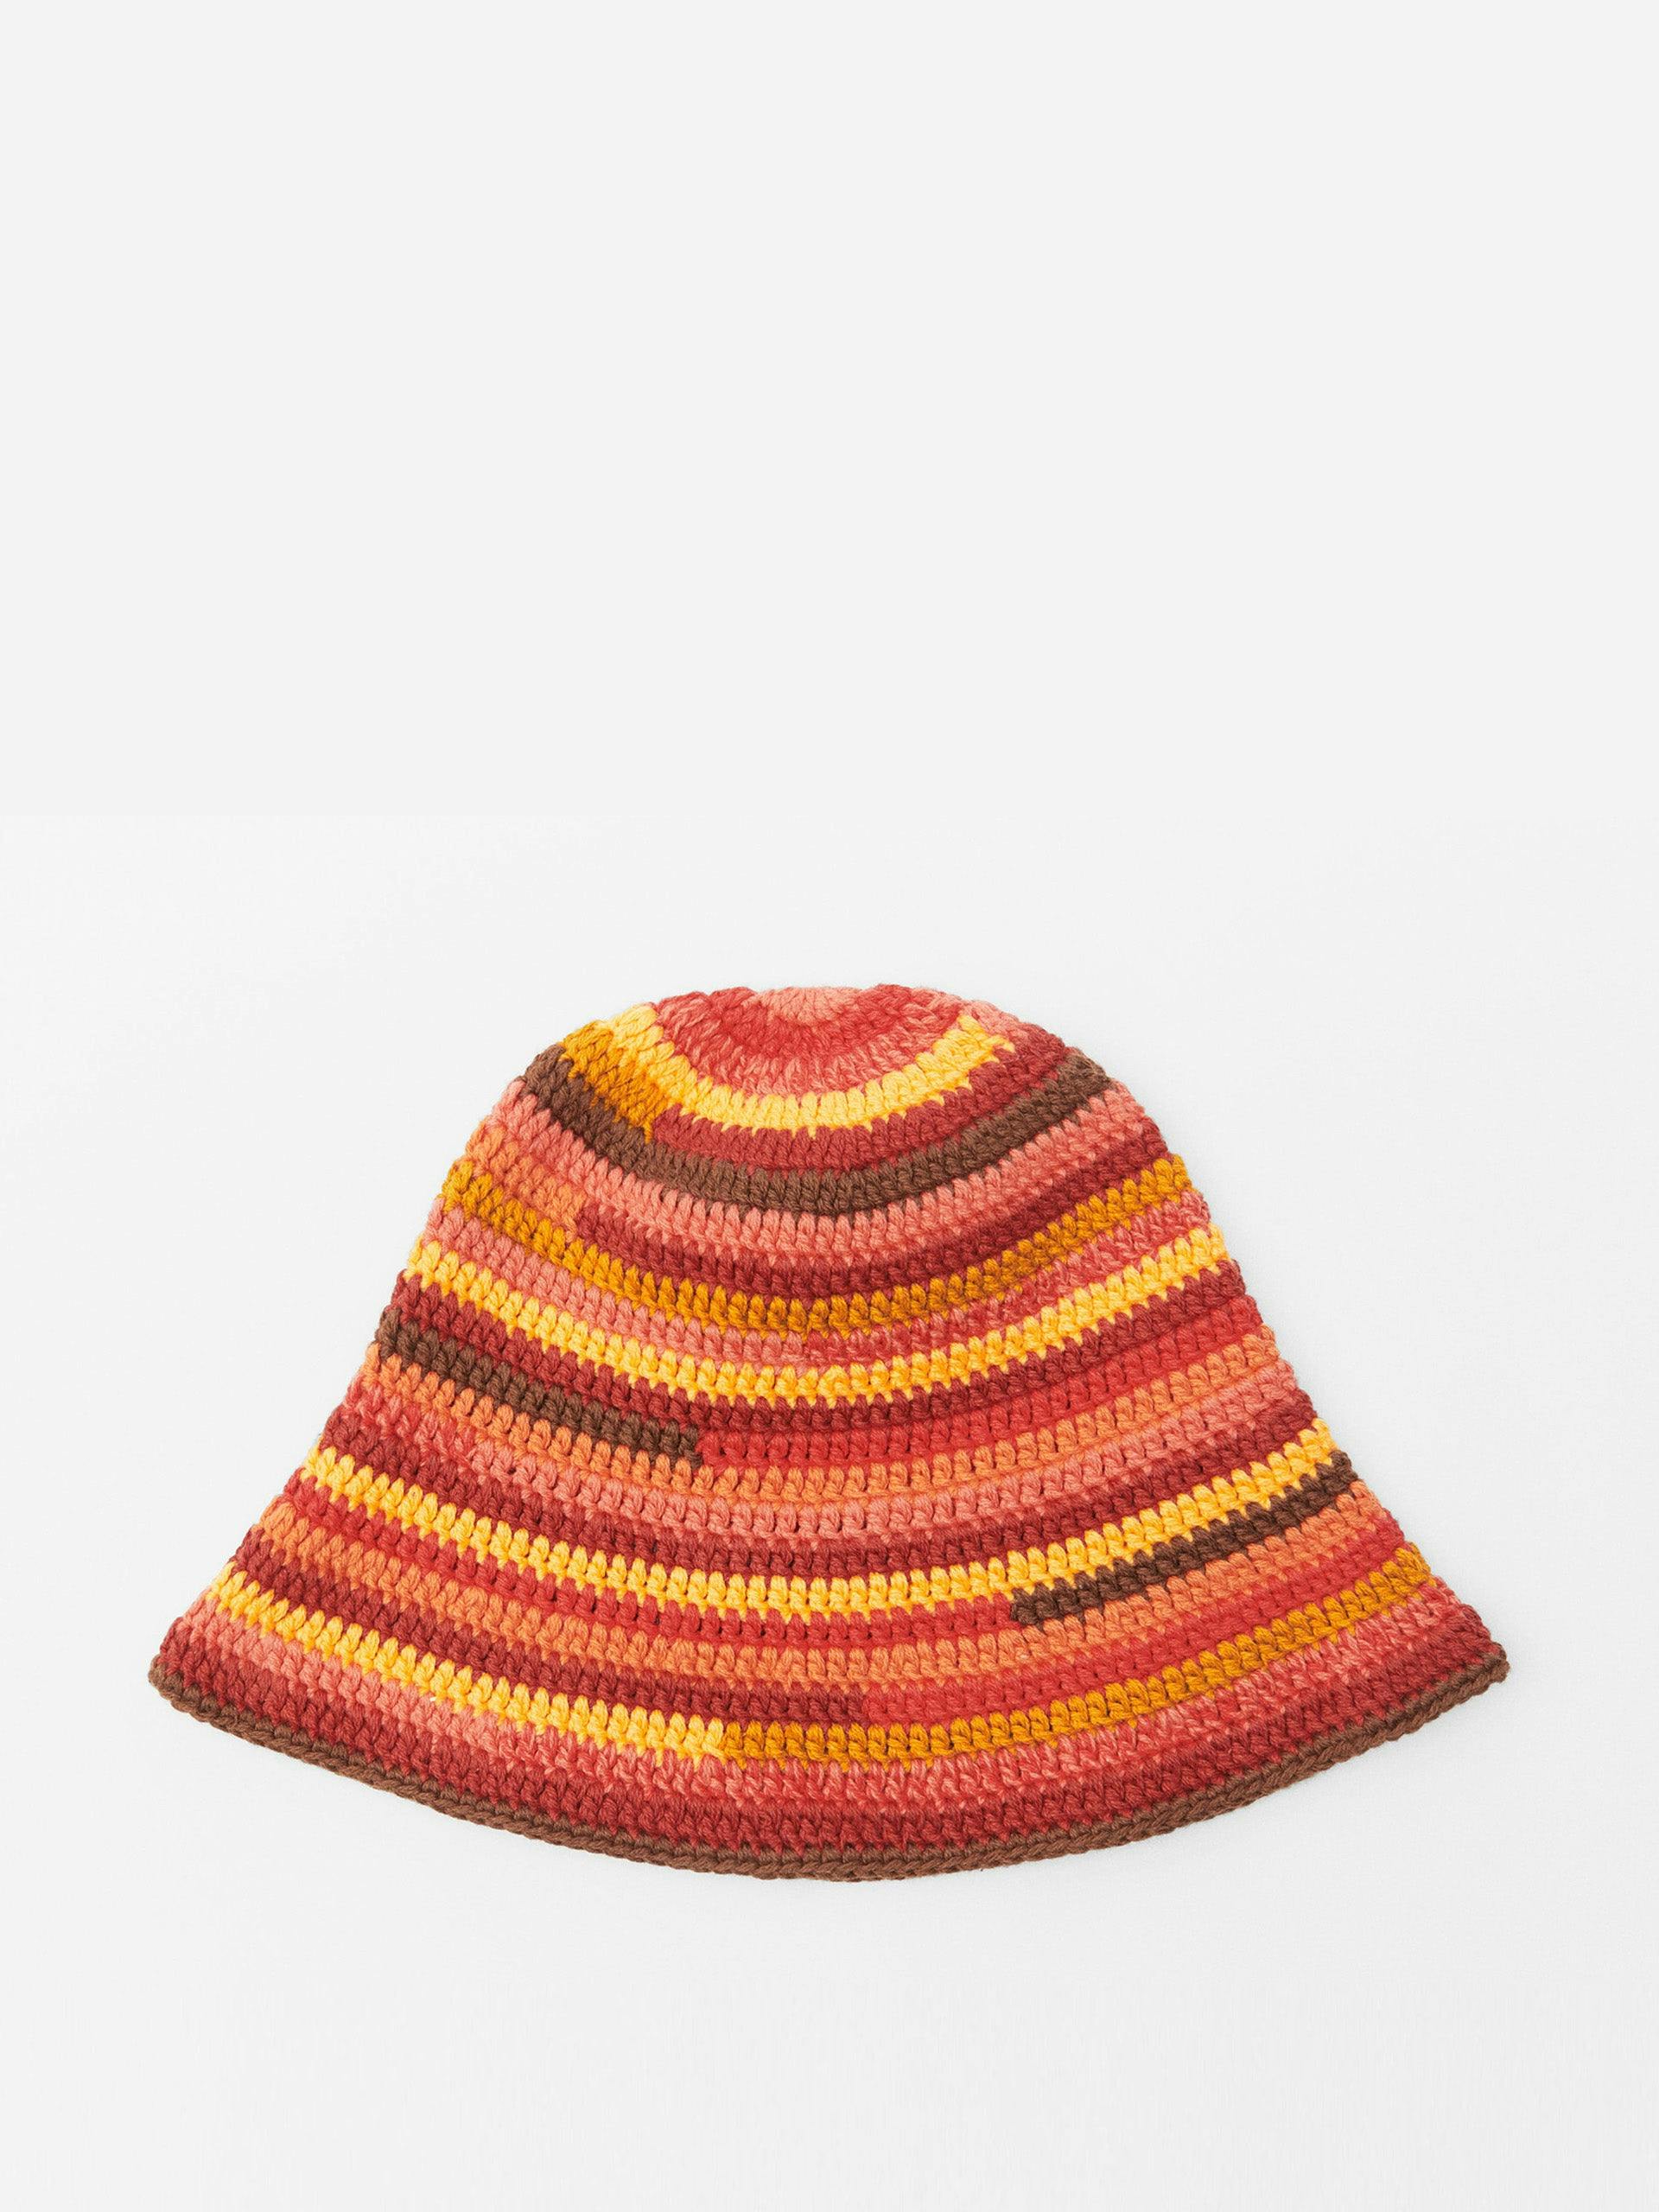 Striped crochet hat